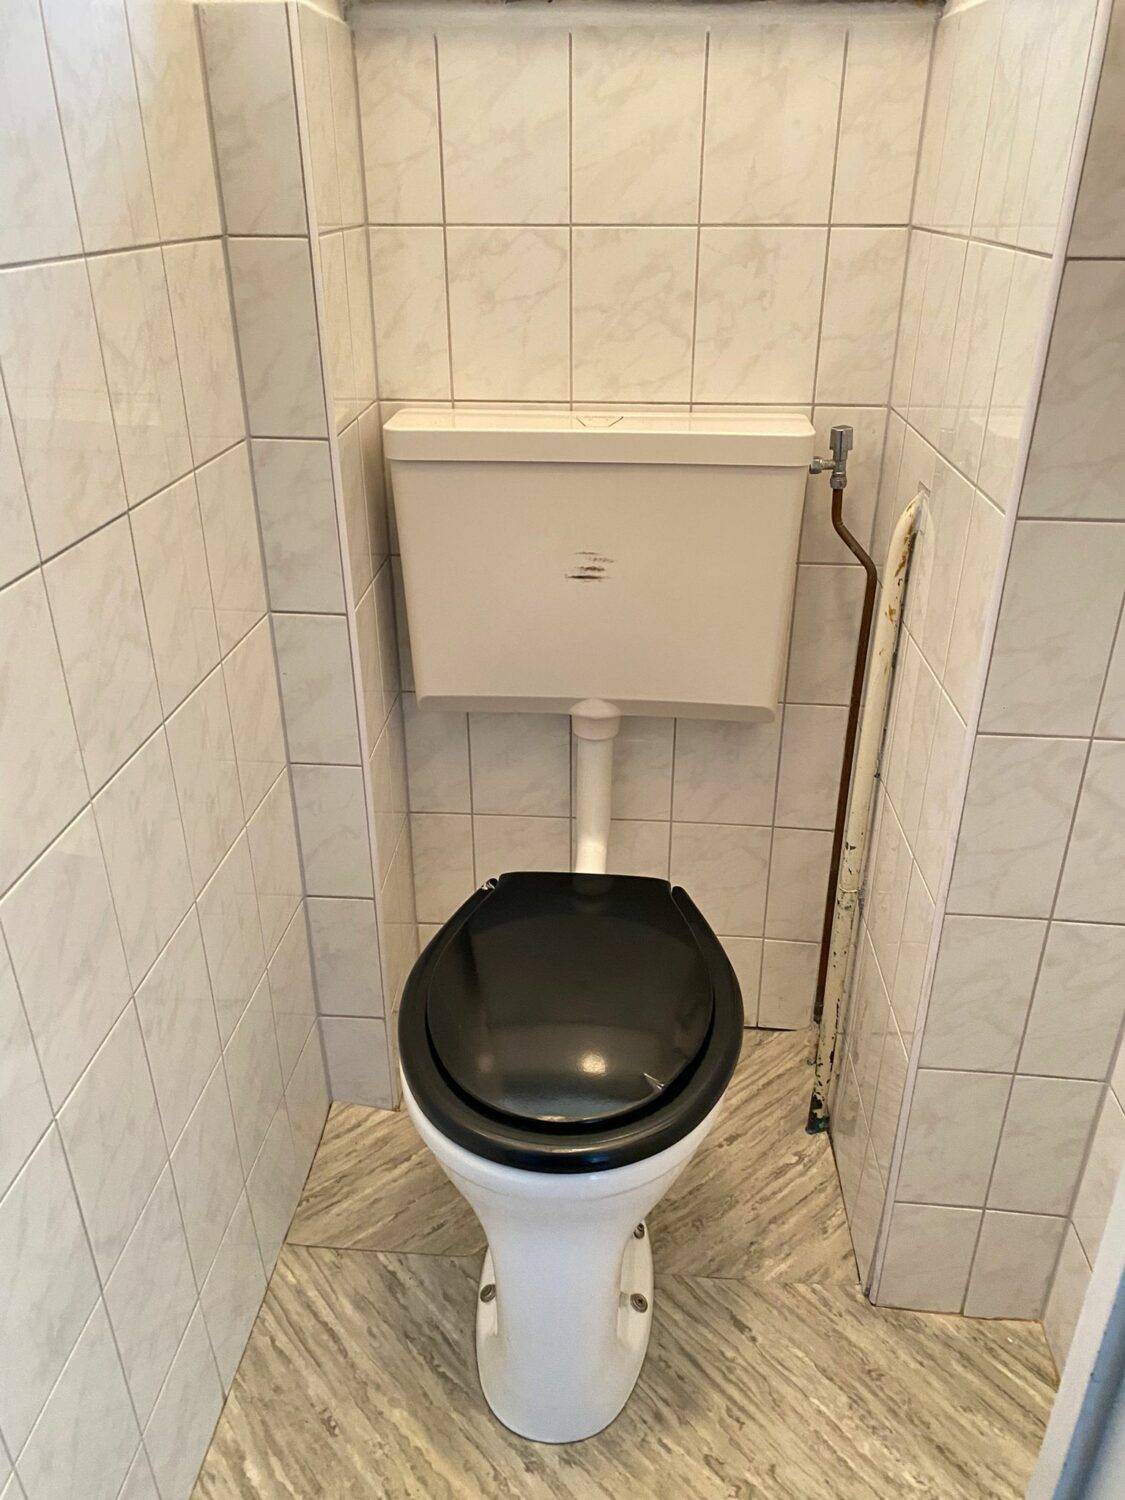 05a toilet